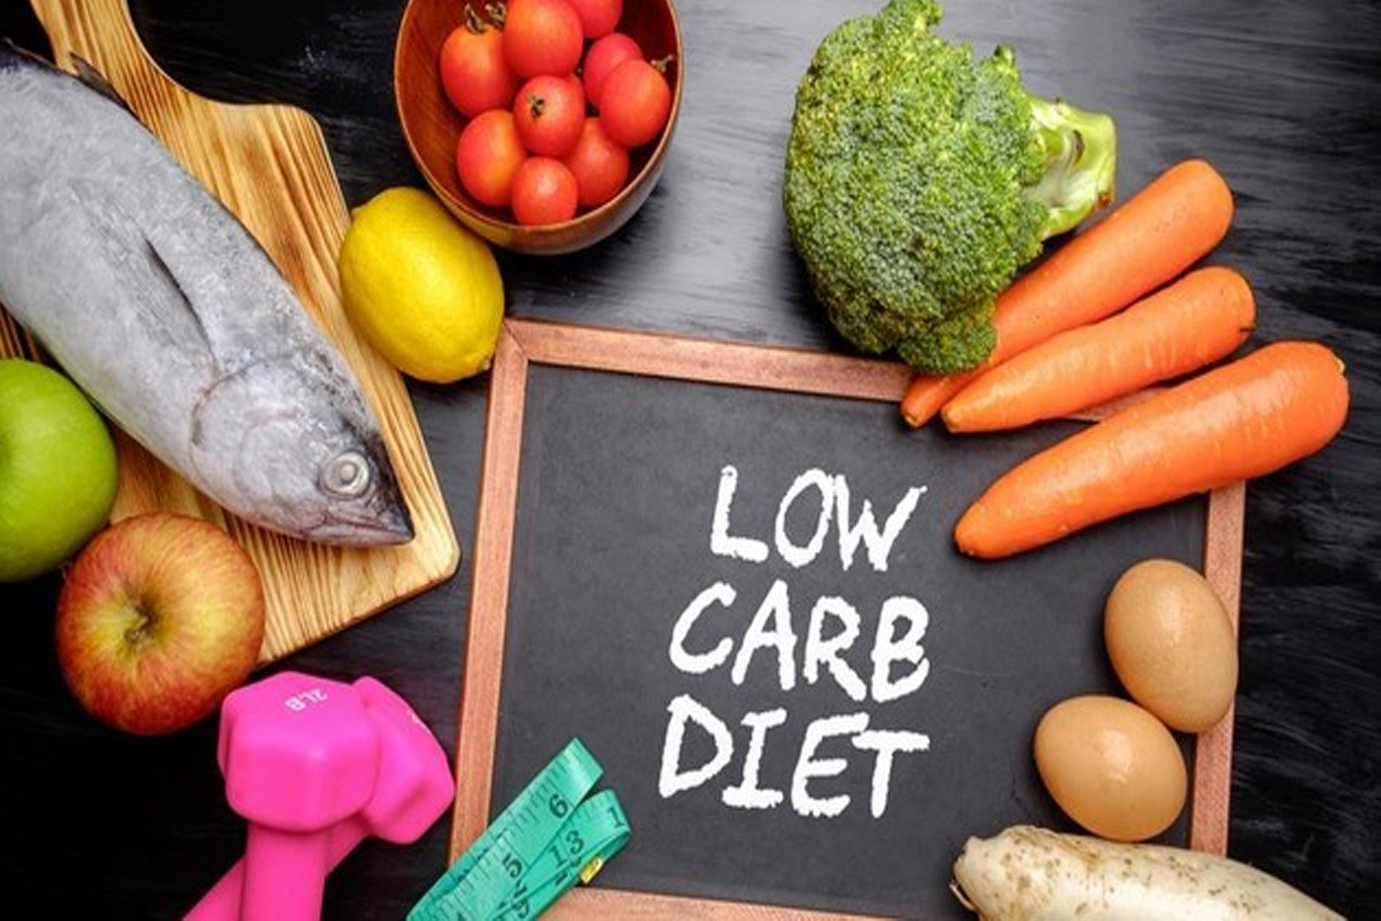 Chế độ ăn ít carbohydrate là giới hạn lượng carbohydrate ăn vào ở mức 50-100 gam, hoặc 10-20% lượng calo hàng ngày